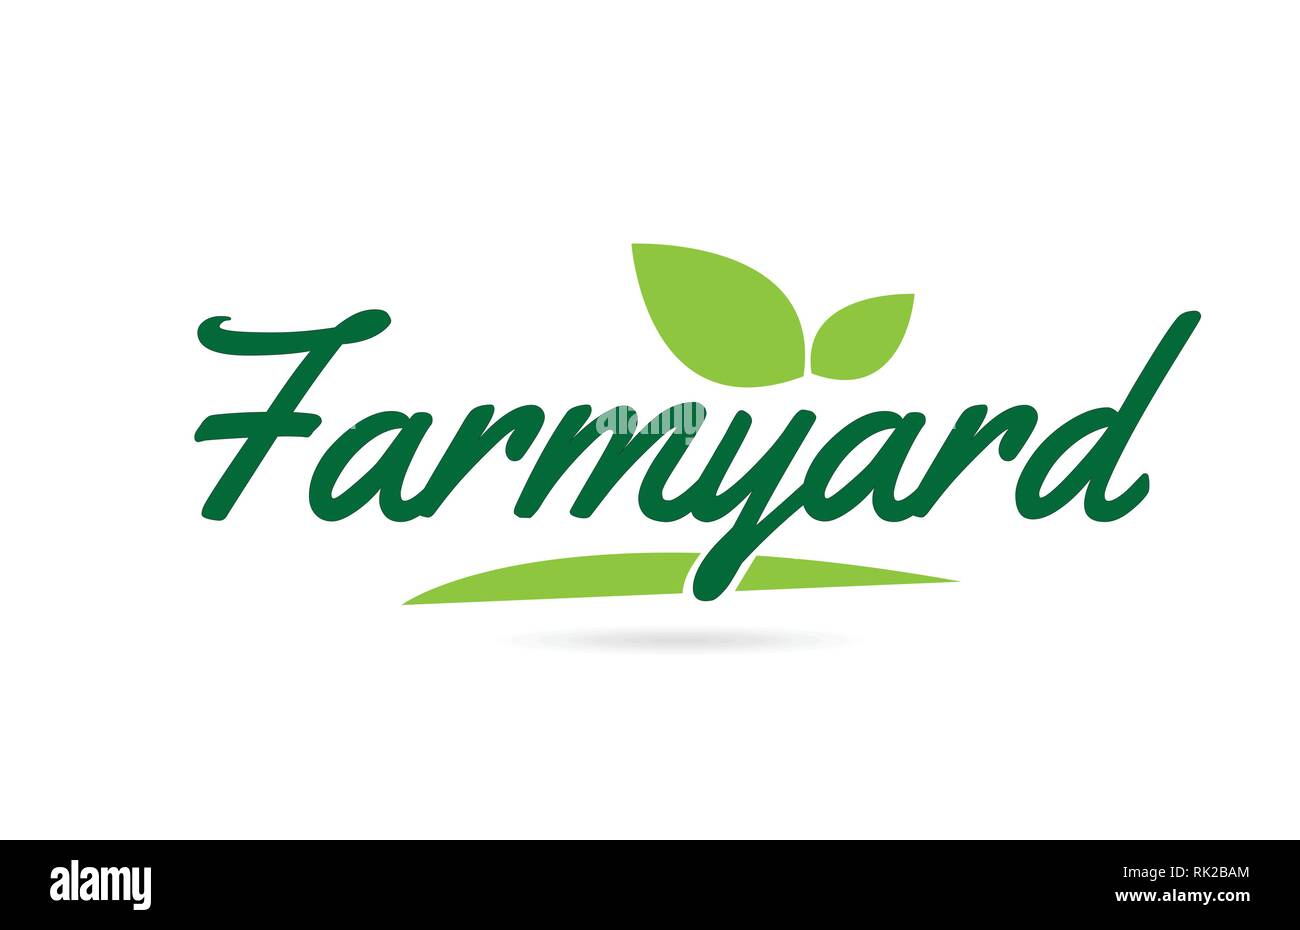 Bauernhof Hand geschriebene Wort text für Typografie Design in Grün mit Blatt kann für ein Logo oder Symbol verwendet werden. Stock Vektor